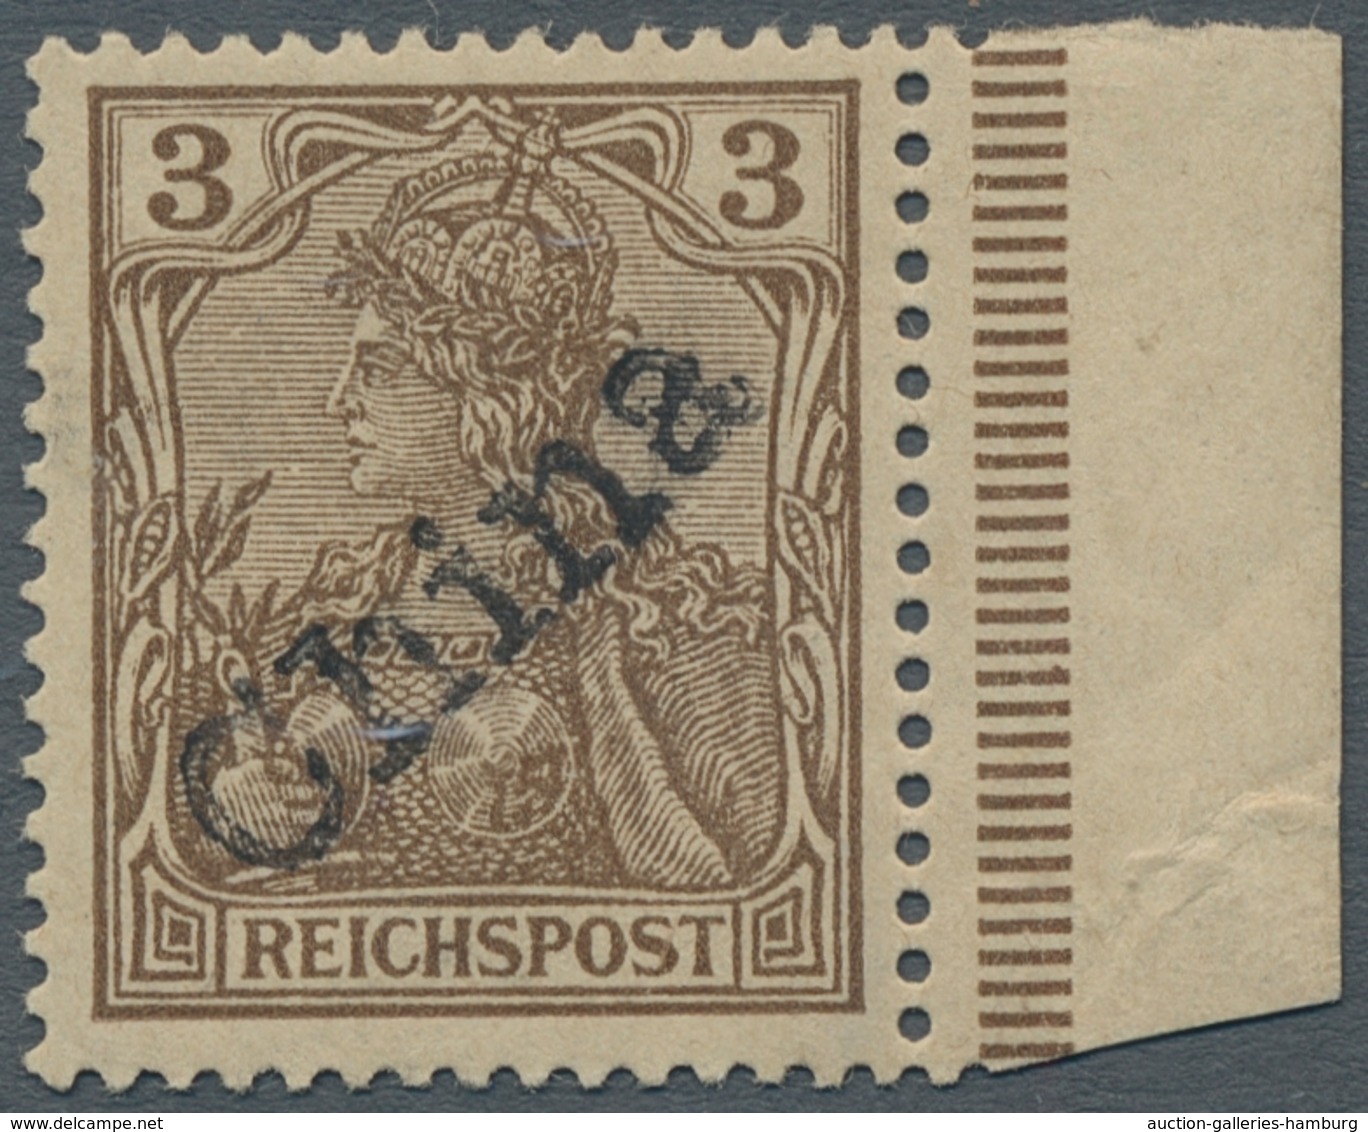 Deutsche Post In China: 1900, 3 Pf Handstempel, Sauber Ungebrauchtes, Fast Postfrisches, Gut Gezähnt - China (oficinas)